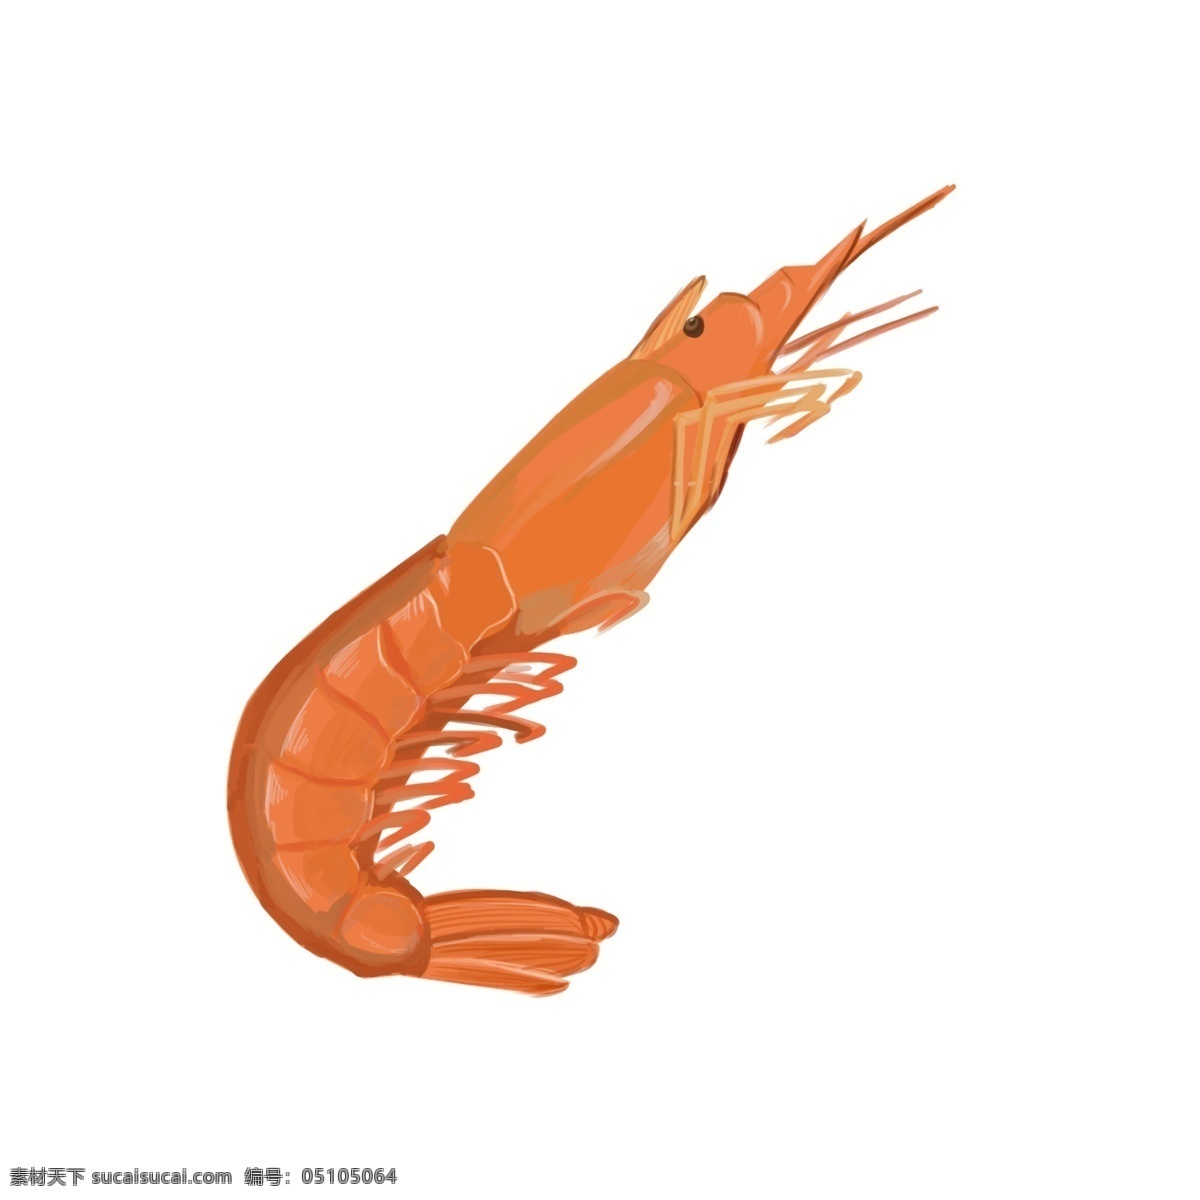 手绘 卡通 橘黄色 虾 插画 手绘虾 卡通虾 橘黄色的虾 美味的虾插画 海洋食物 做熟的虾 海鲜 动物 食物